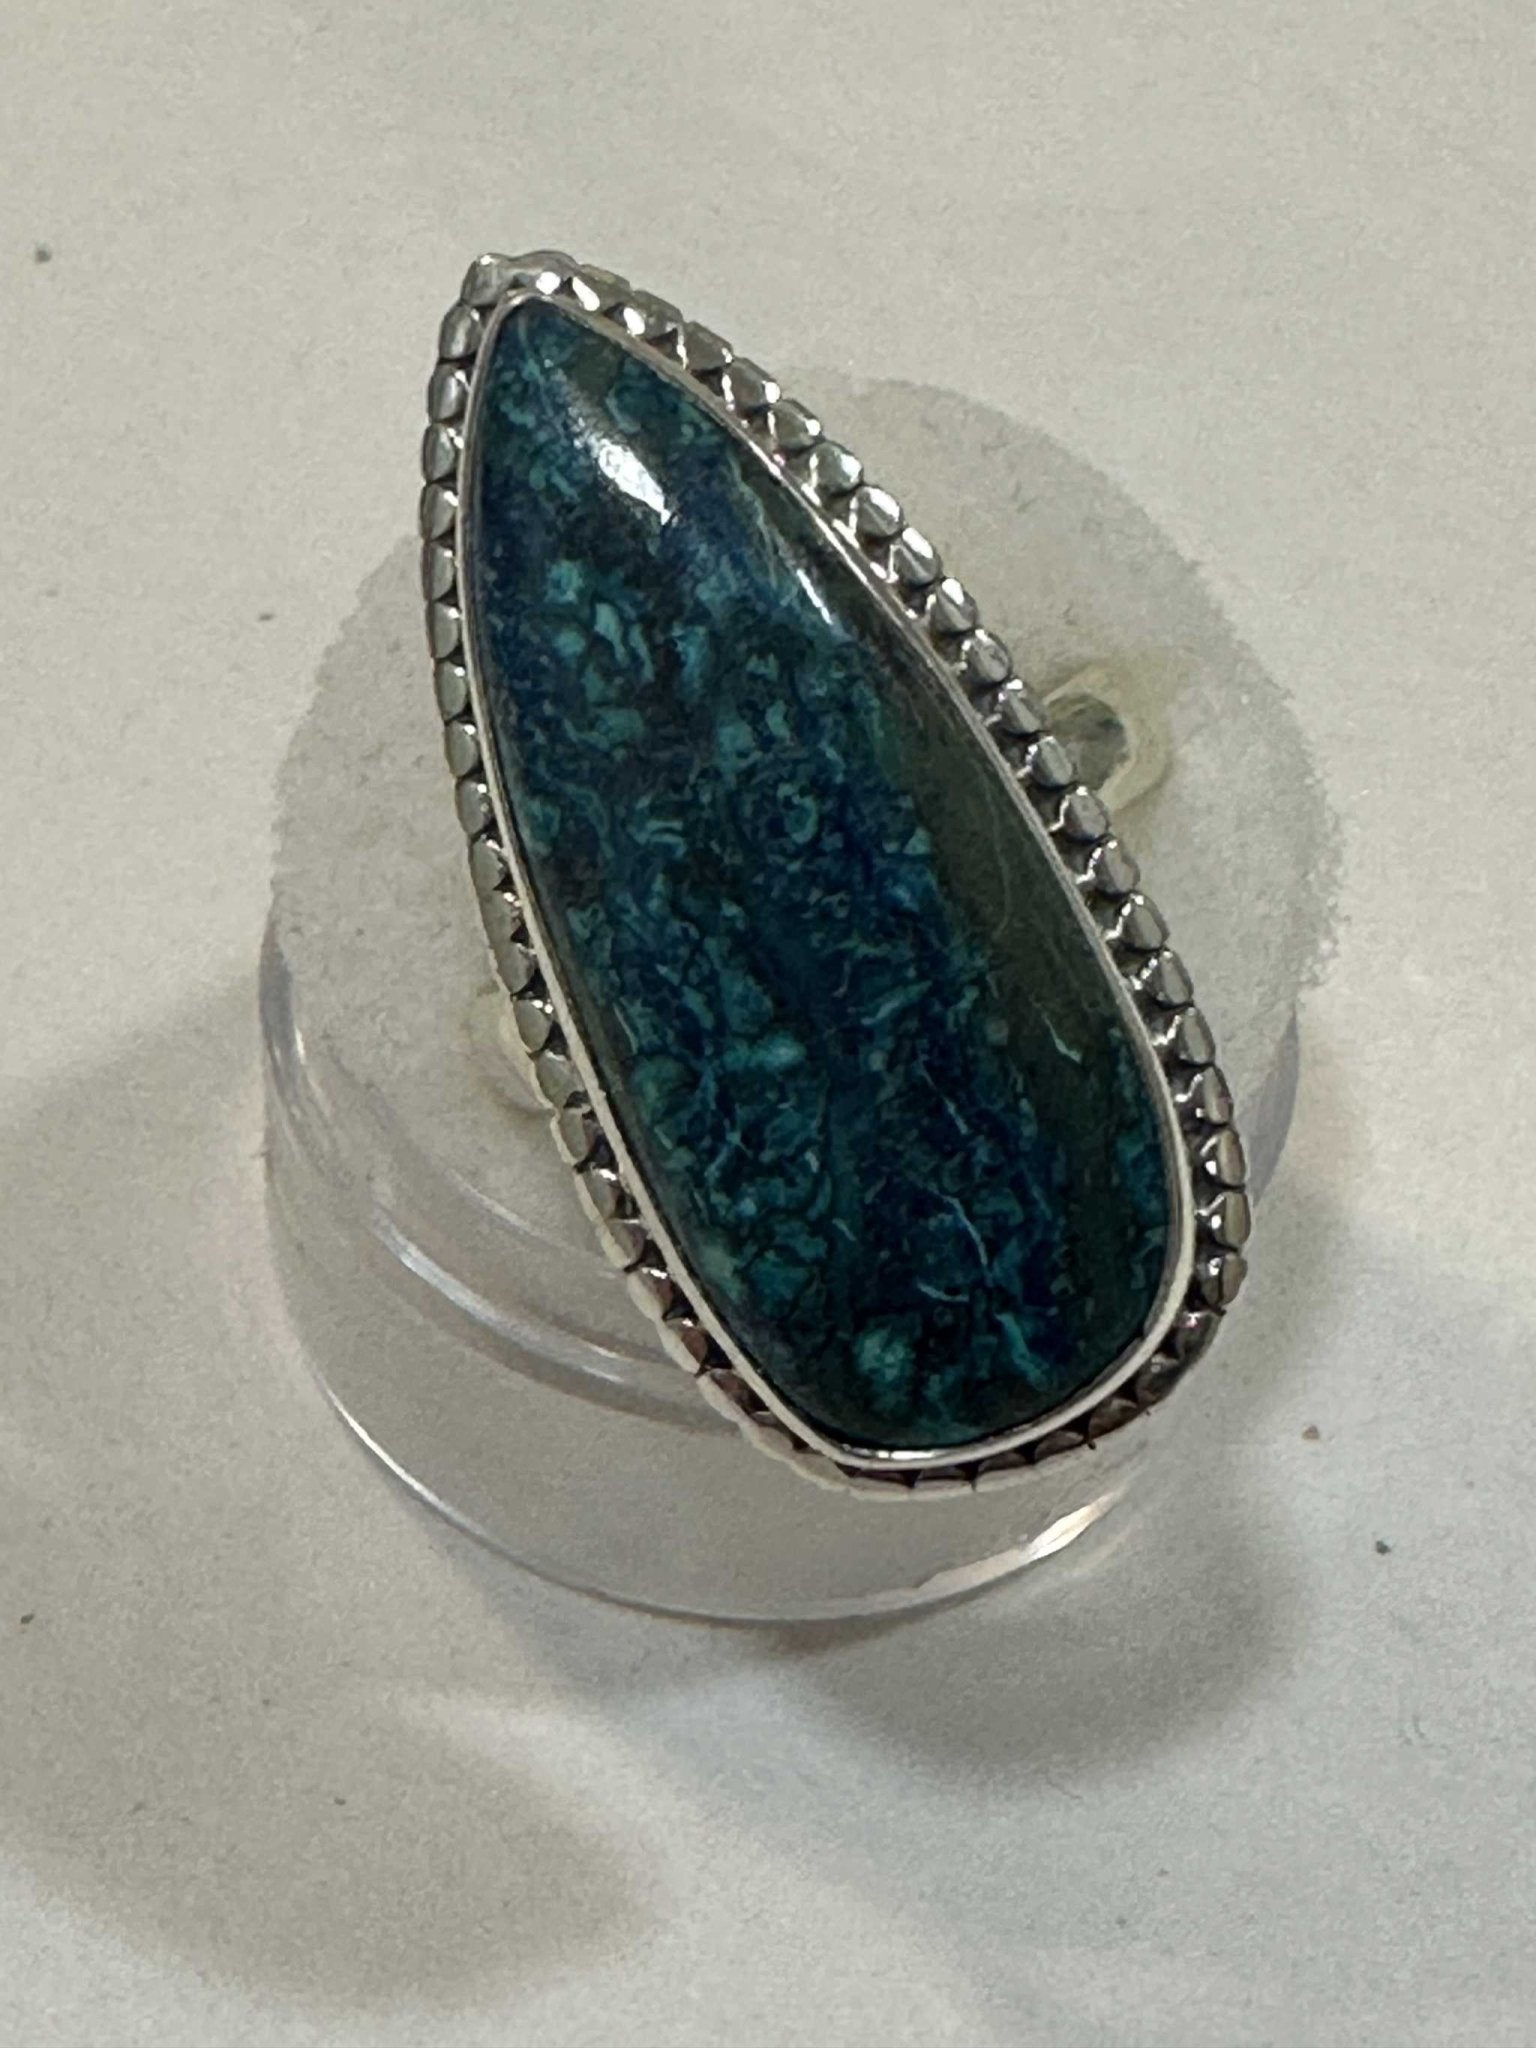 Shattukite Ring "Goddess Bliss" - Sacred Crystals Rings